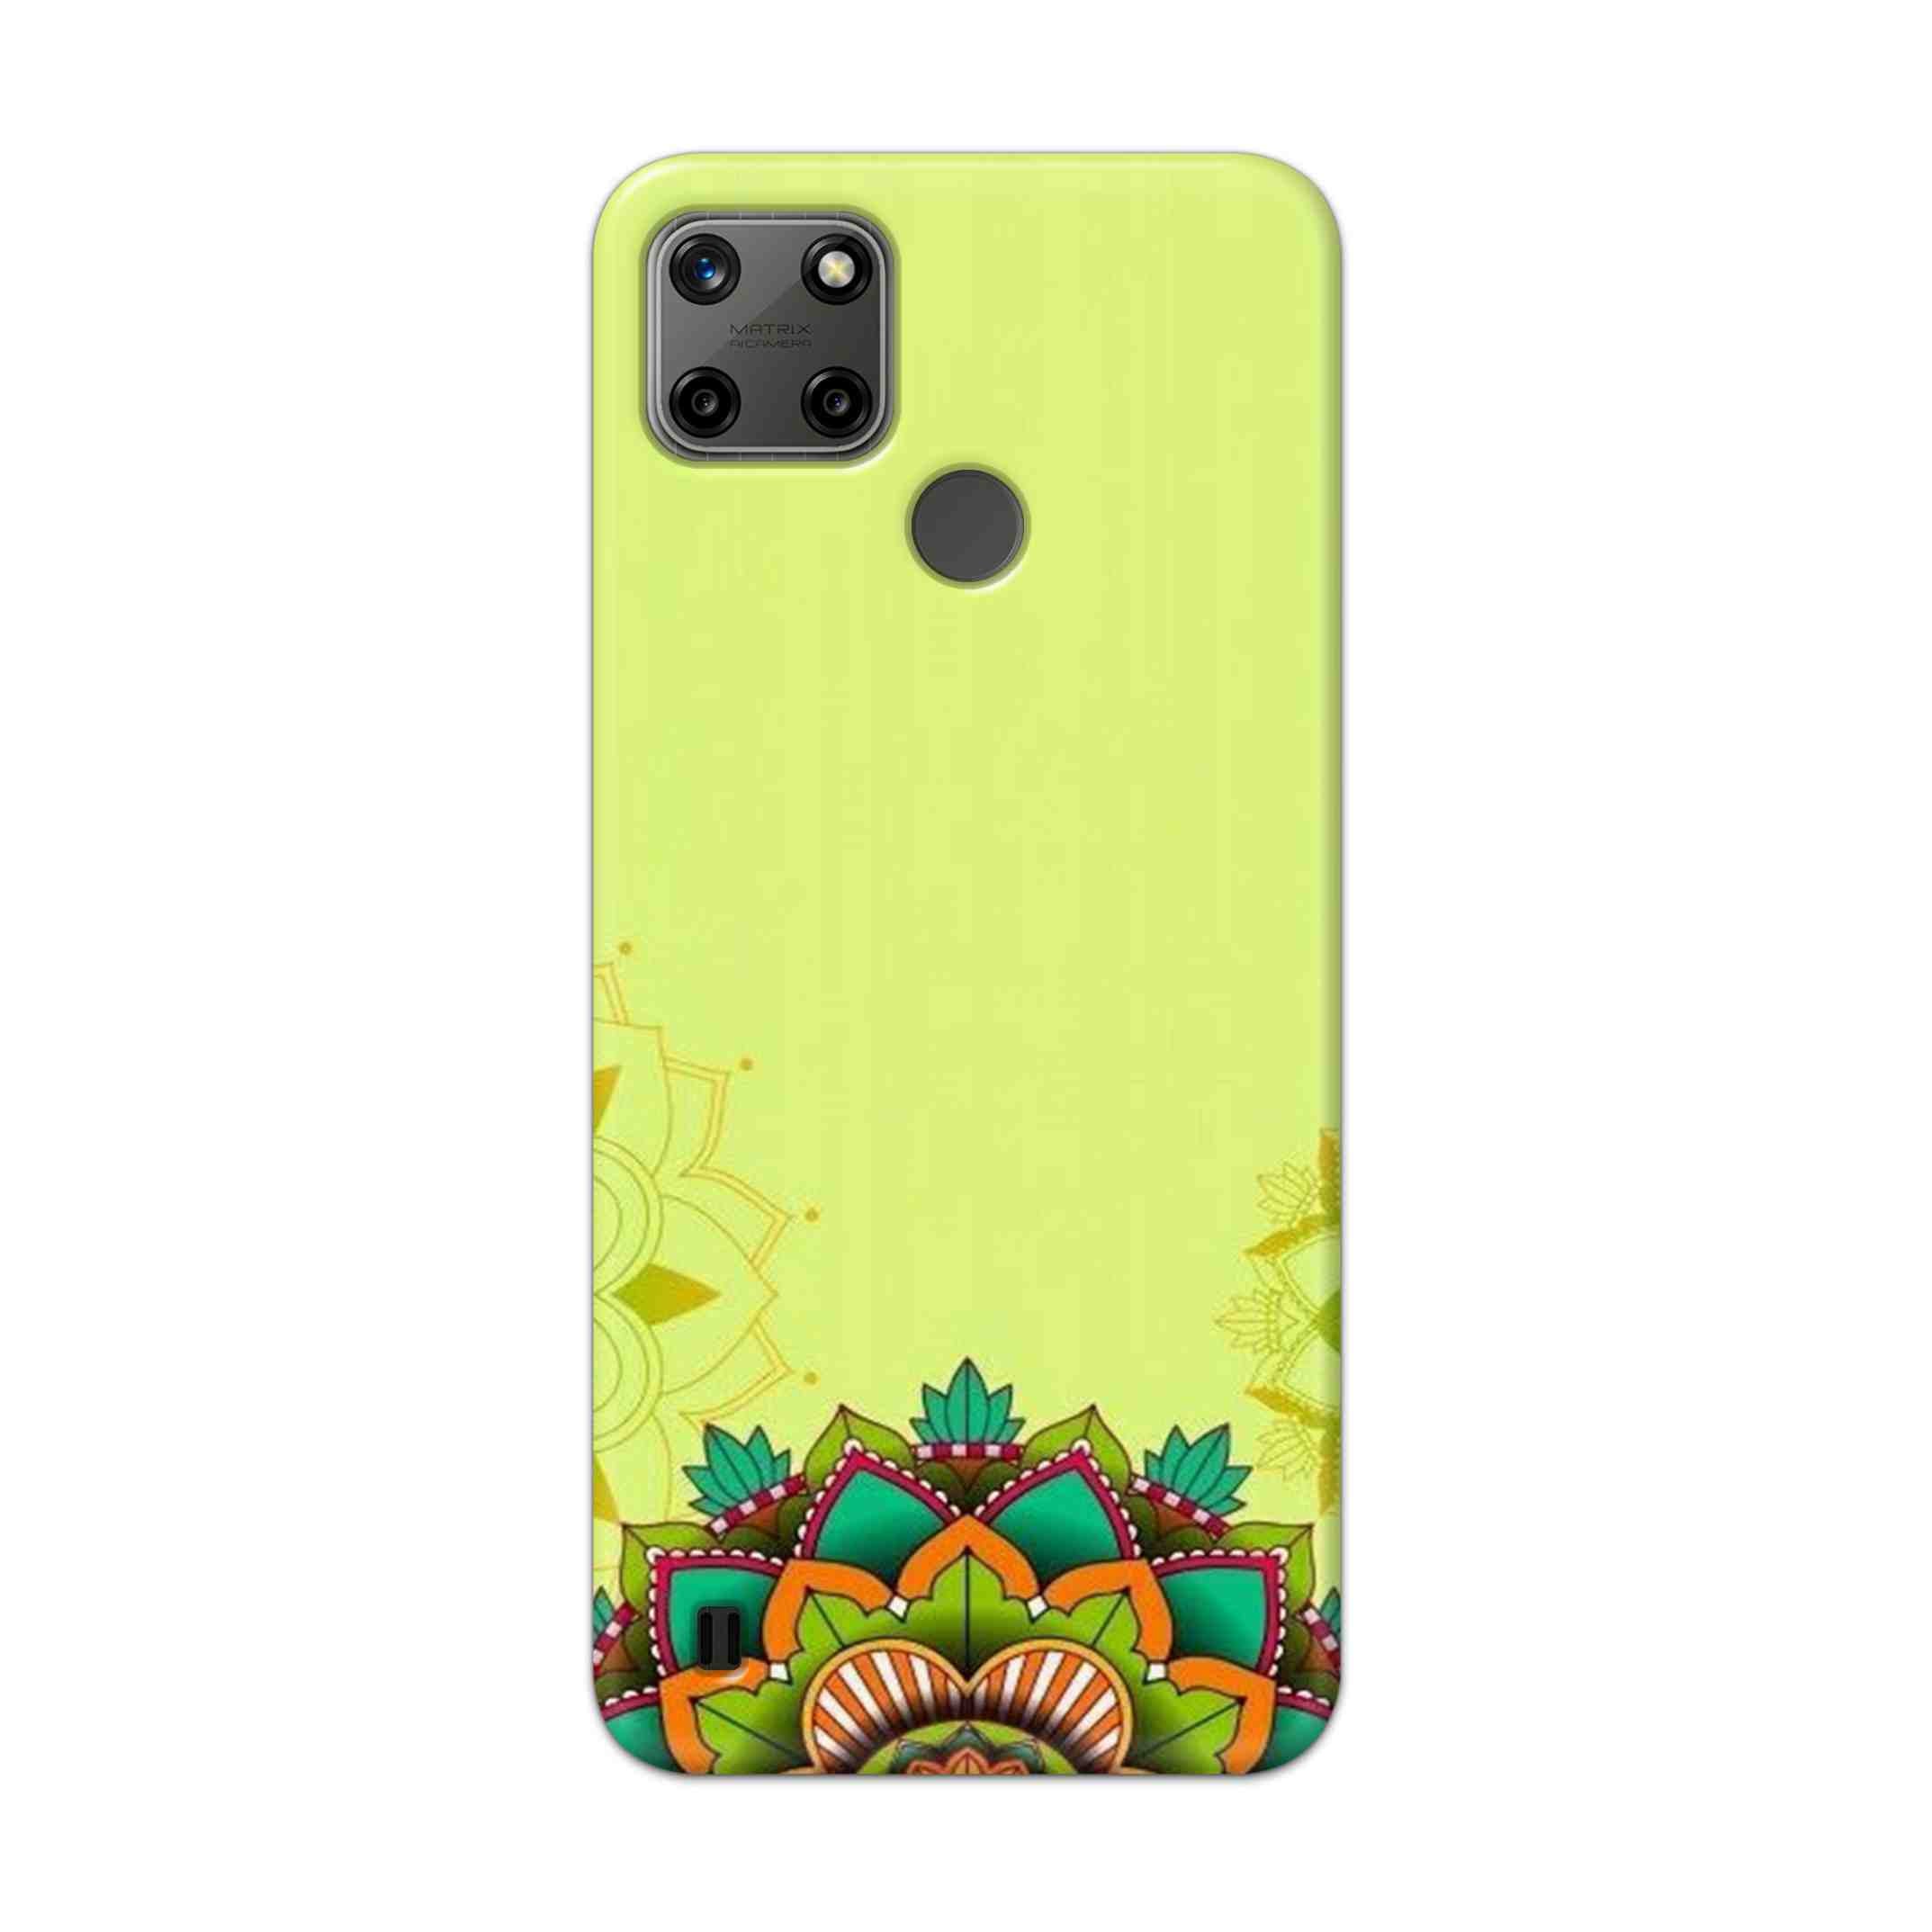 Buy Flower Mandala Hard Back Mobile Phone Case Cover For Realme C25Y Online